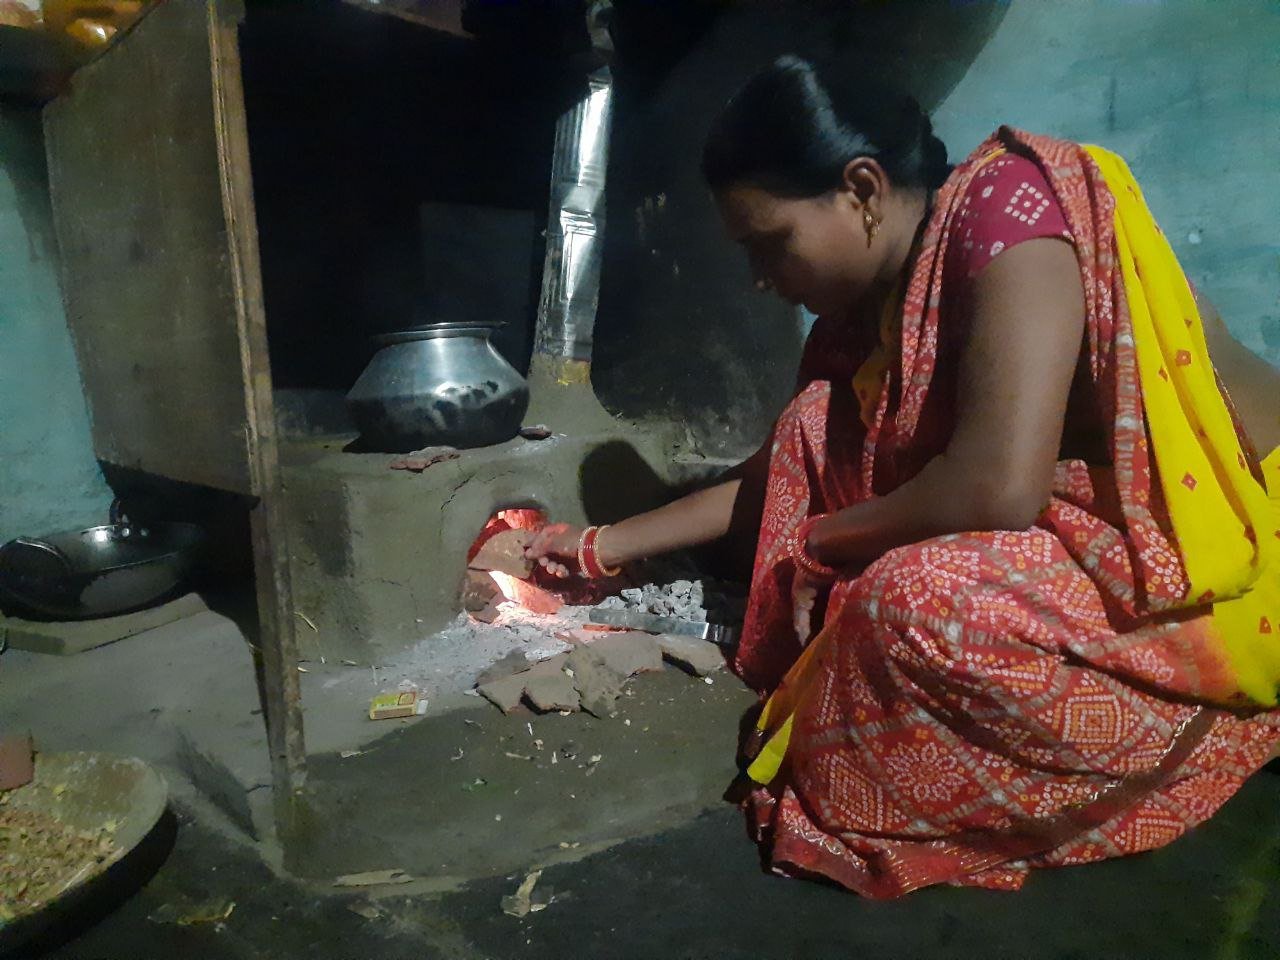 Bhilai धुआं के नुकसान से बचाया जा रहा घर की लक्ष्मी को